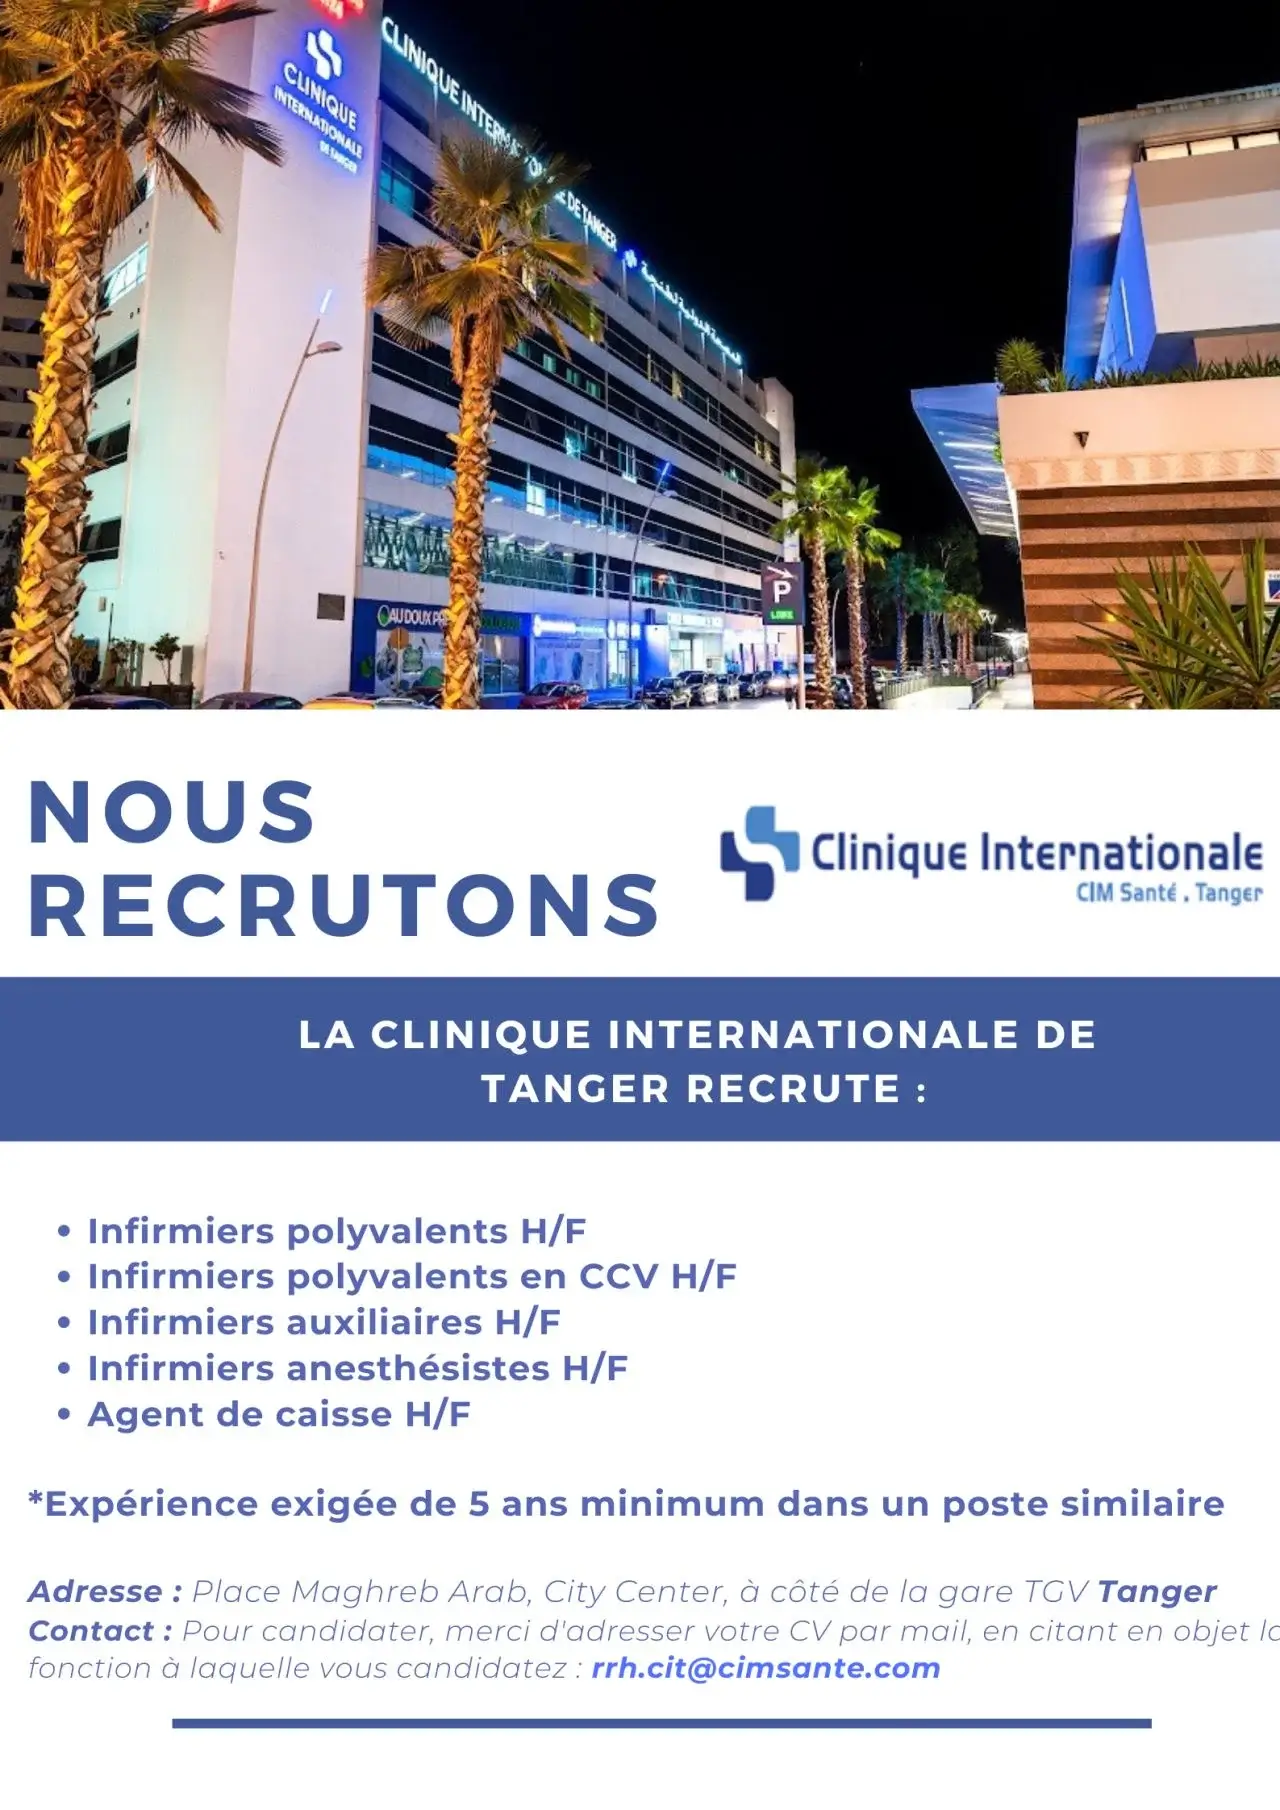 Nous recrutons pour le compte de la clinique internationale de Tanger les profils ci-dessous;